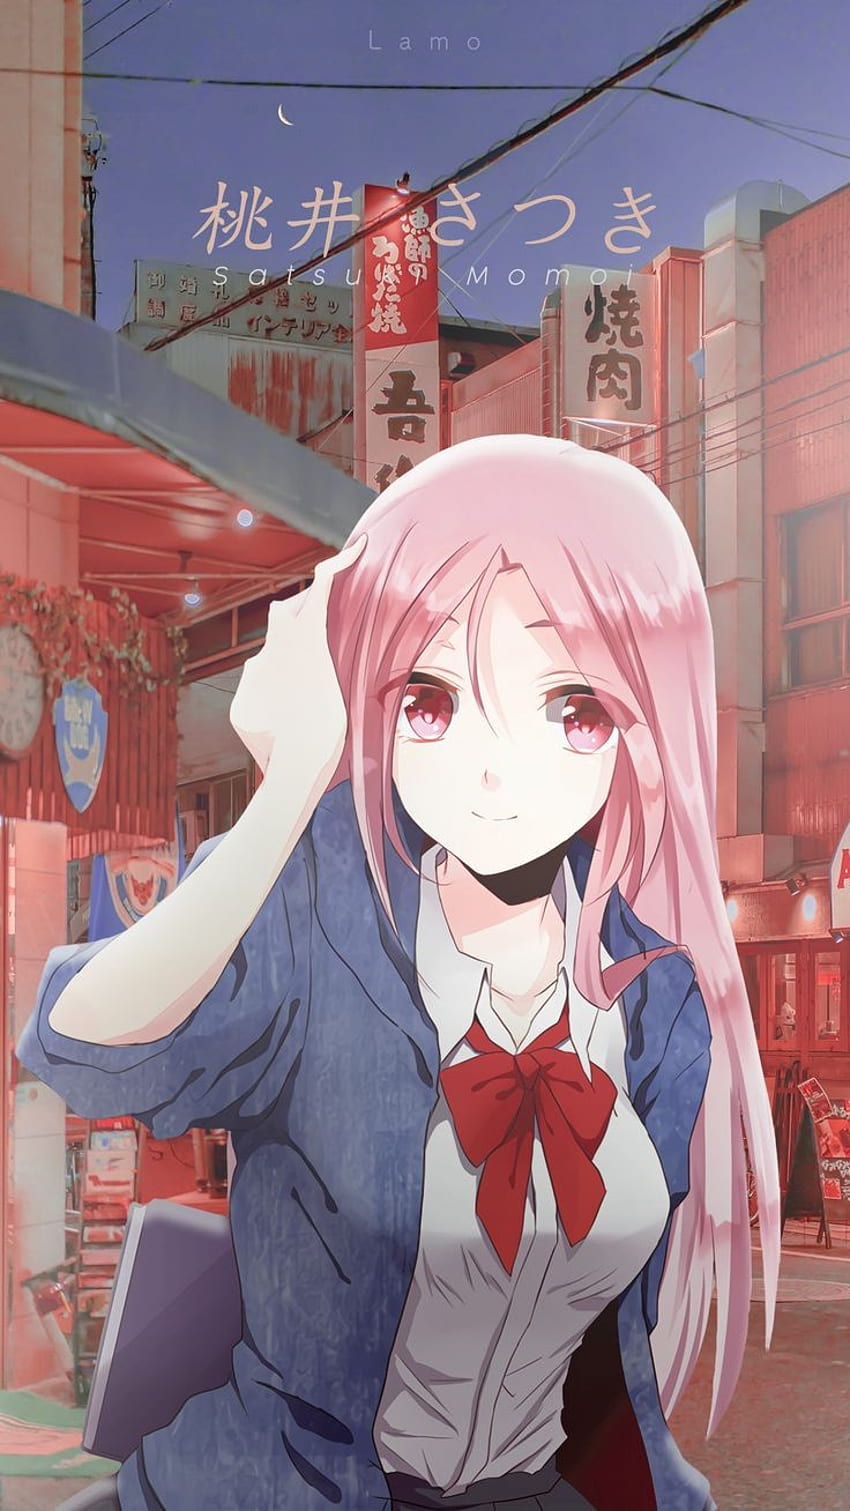 Satsuki momoi, kuroko's Basketball, Anime Girl, Kuroko no basket, anime Papel de parede de celular HD